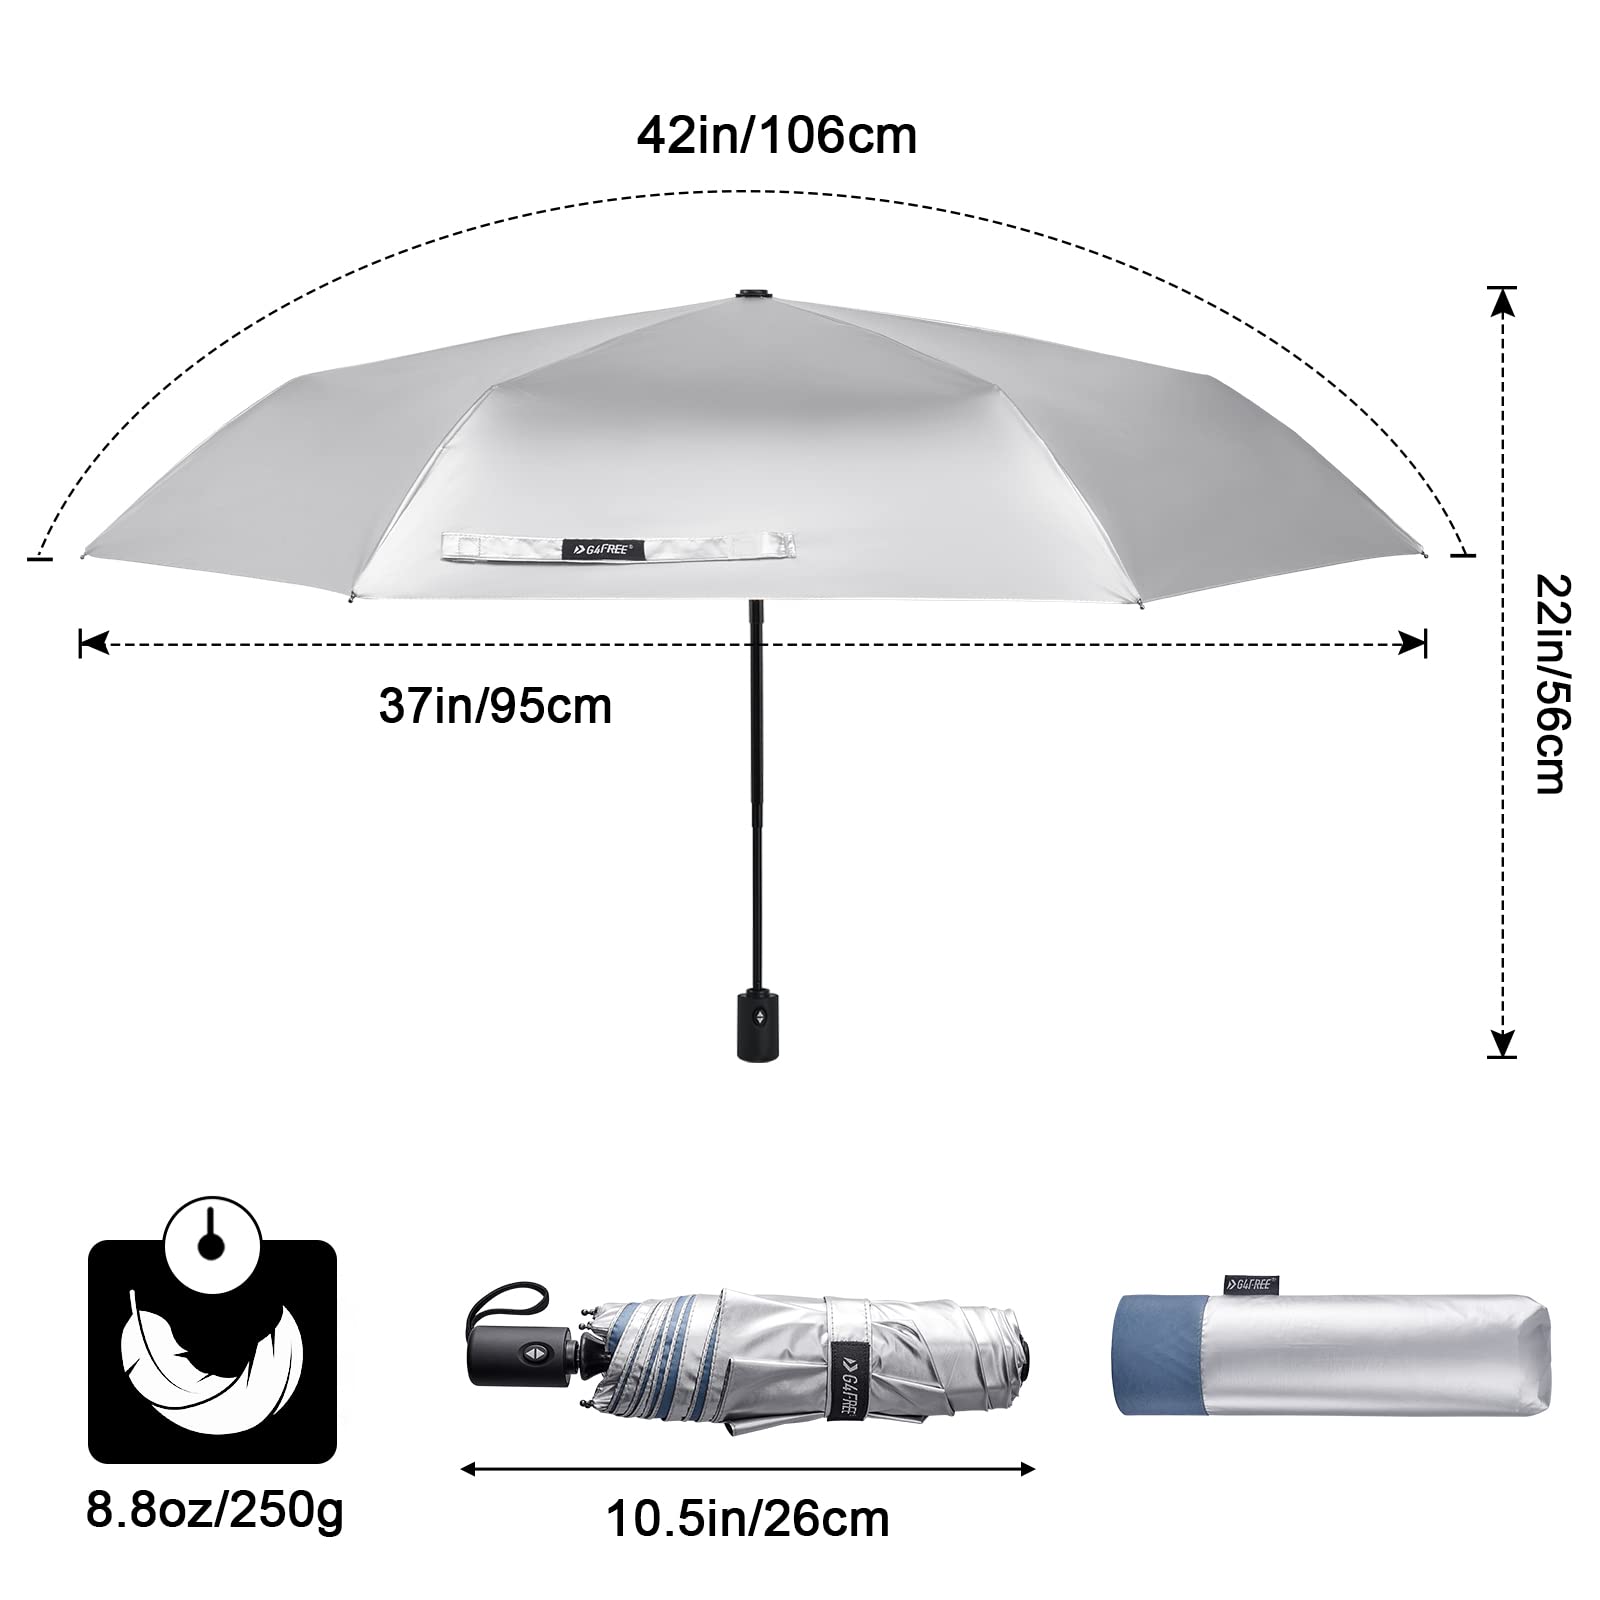  G4Free Liteflex Hiking Umbrella Small Mini Ultralight